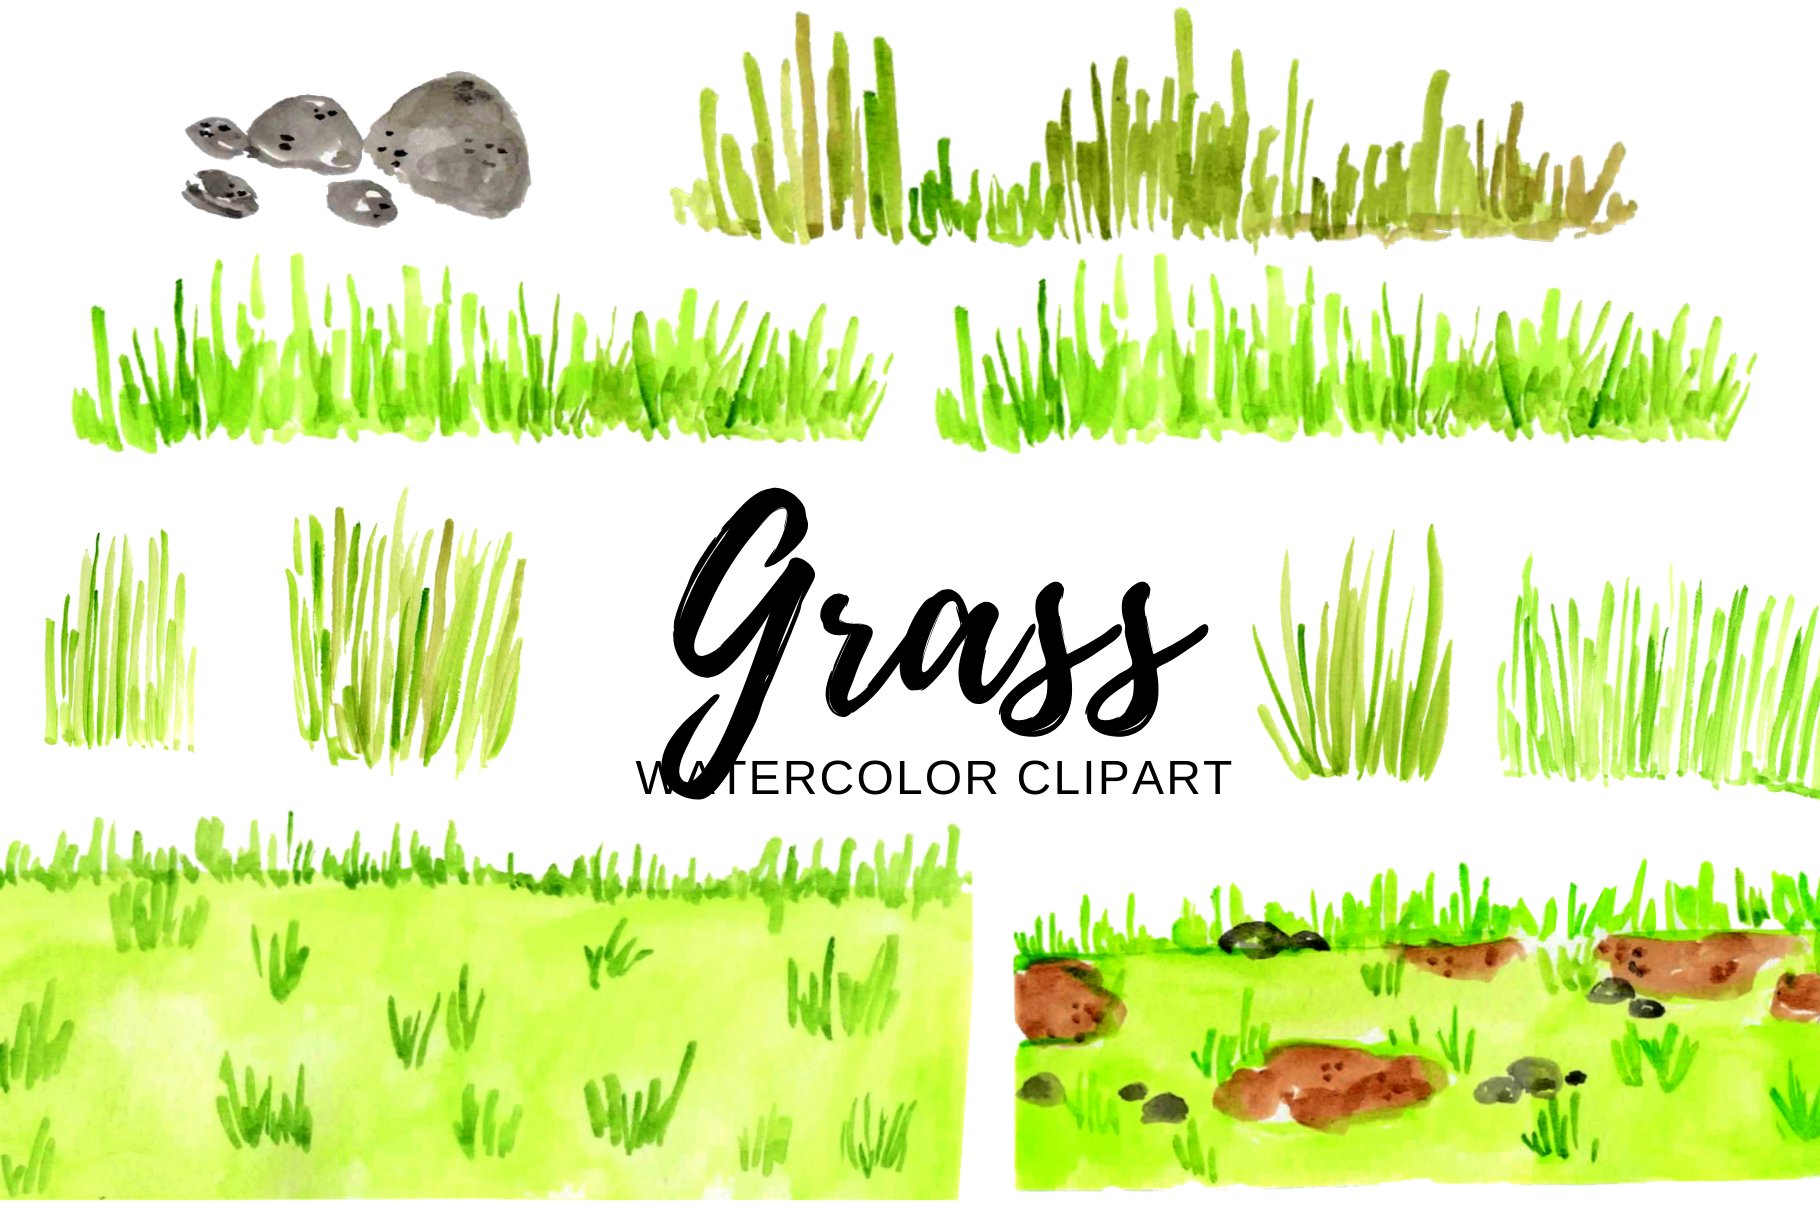 Bright grass illustration.